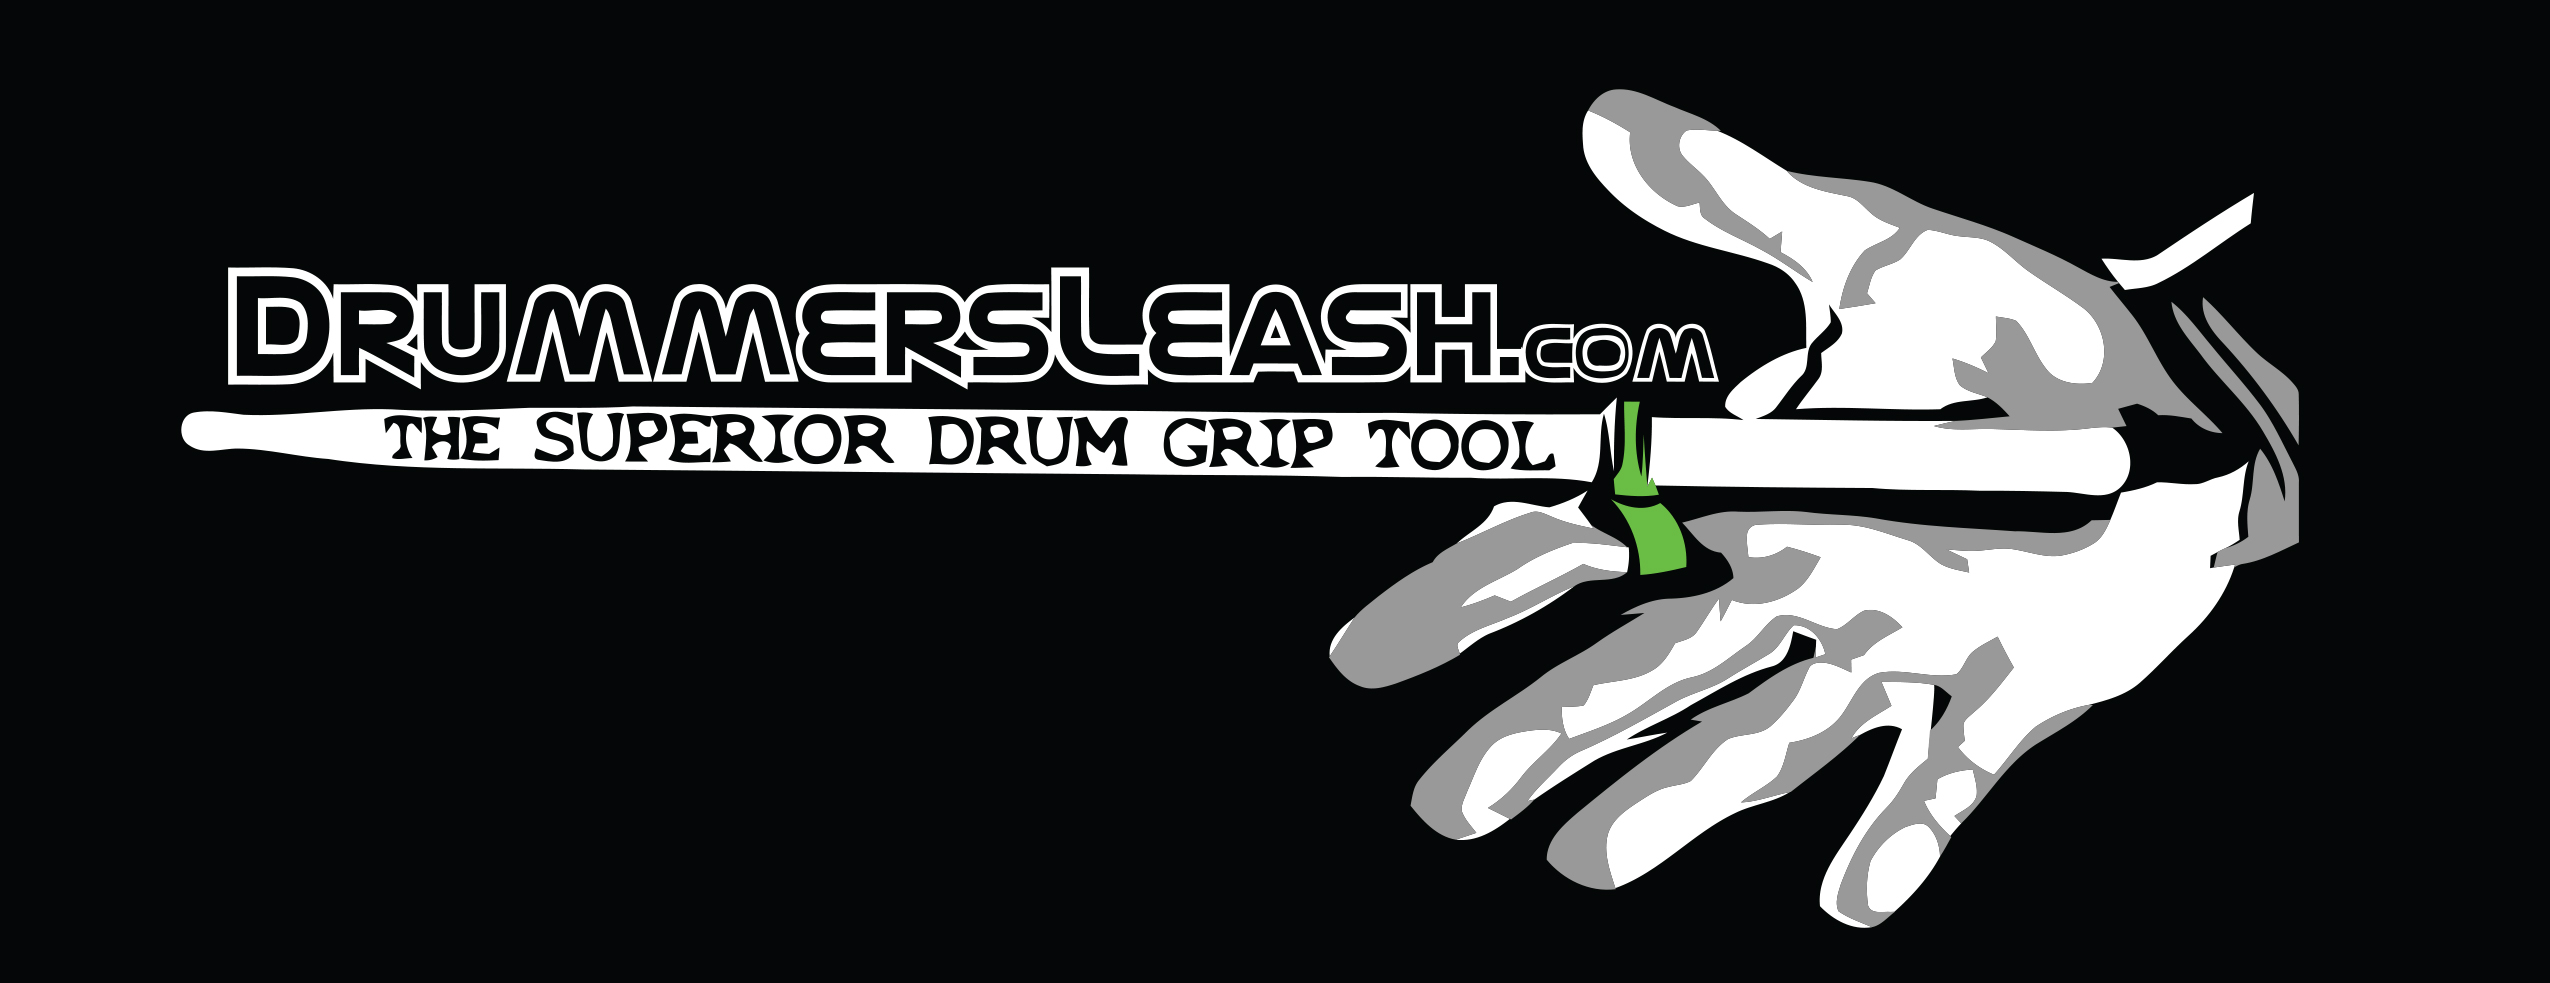 Drummersleash